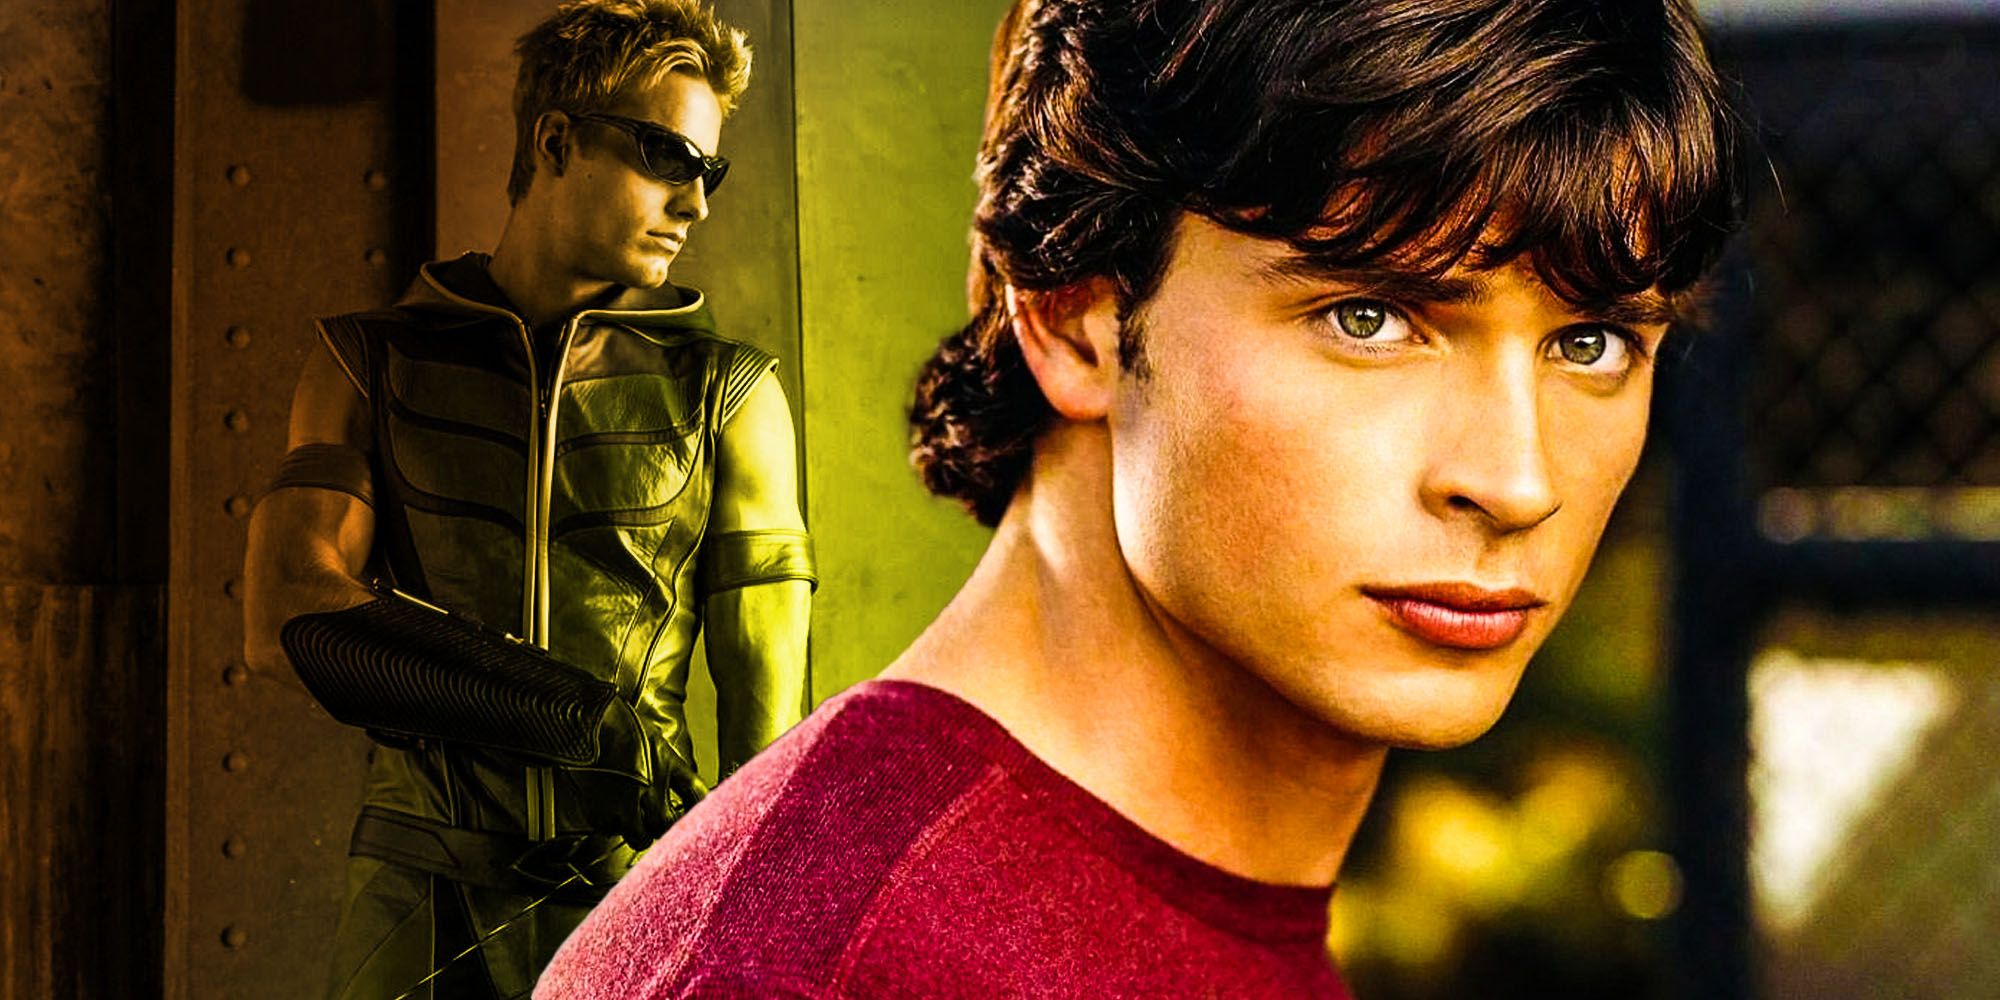 Smallville did Green arrows darkest story